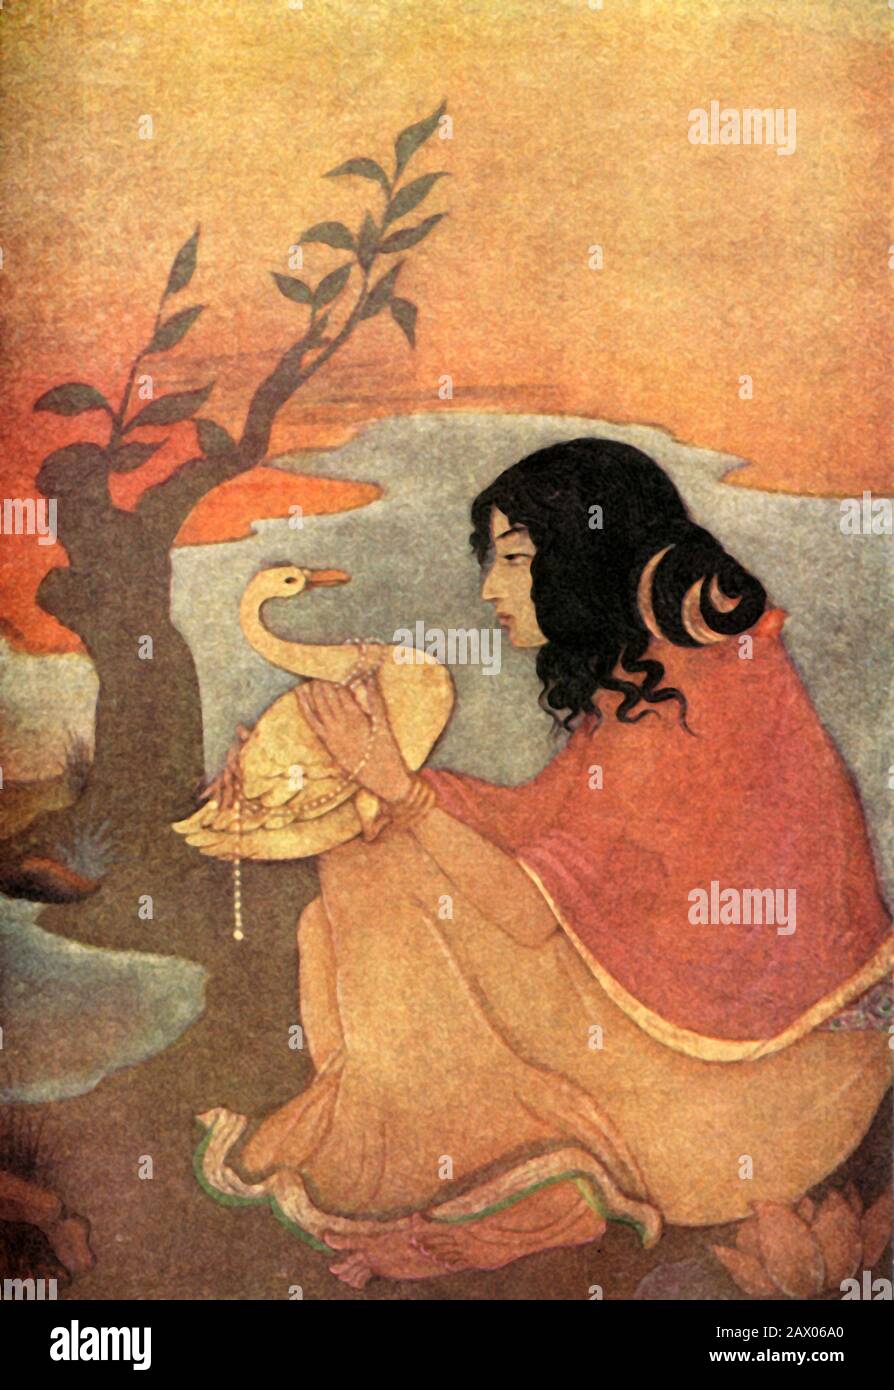 'Damayanti', 1920. Damayanti, un personaje en una historia de amor en el libro Vana Parva del Mahabharata, era una princesa de tal belleza incluso los Dioses la admiraban. Ella se enamoró de Nala después de oír sus virtudes de un cisne dorado. De "Mitos de los hindúes &amp; Budistas", por la Hermana Nivedita y Ananda K. Coomaraswamy. [George G. Harrap &amp; Company Ltd, Londres, 1920] Foto de stock